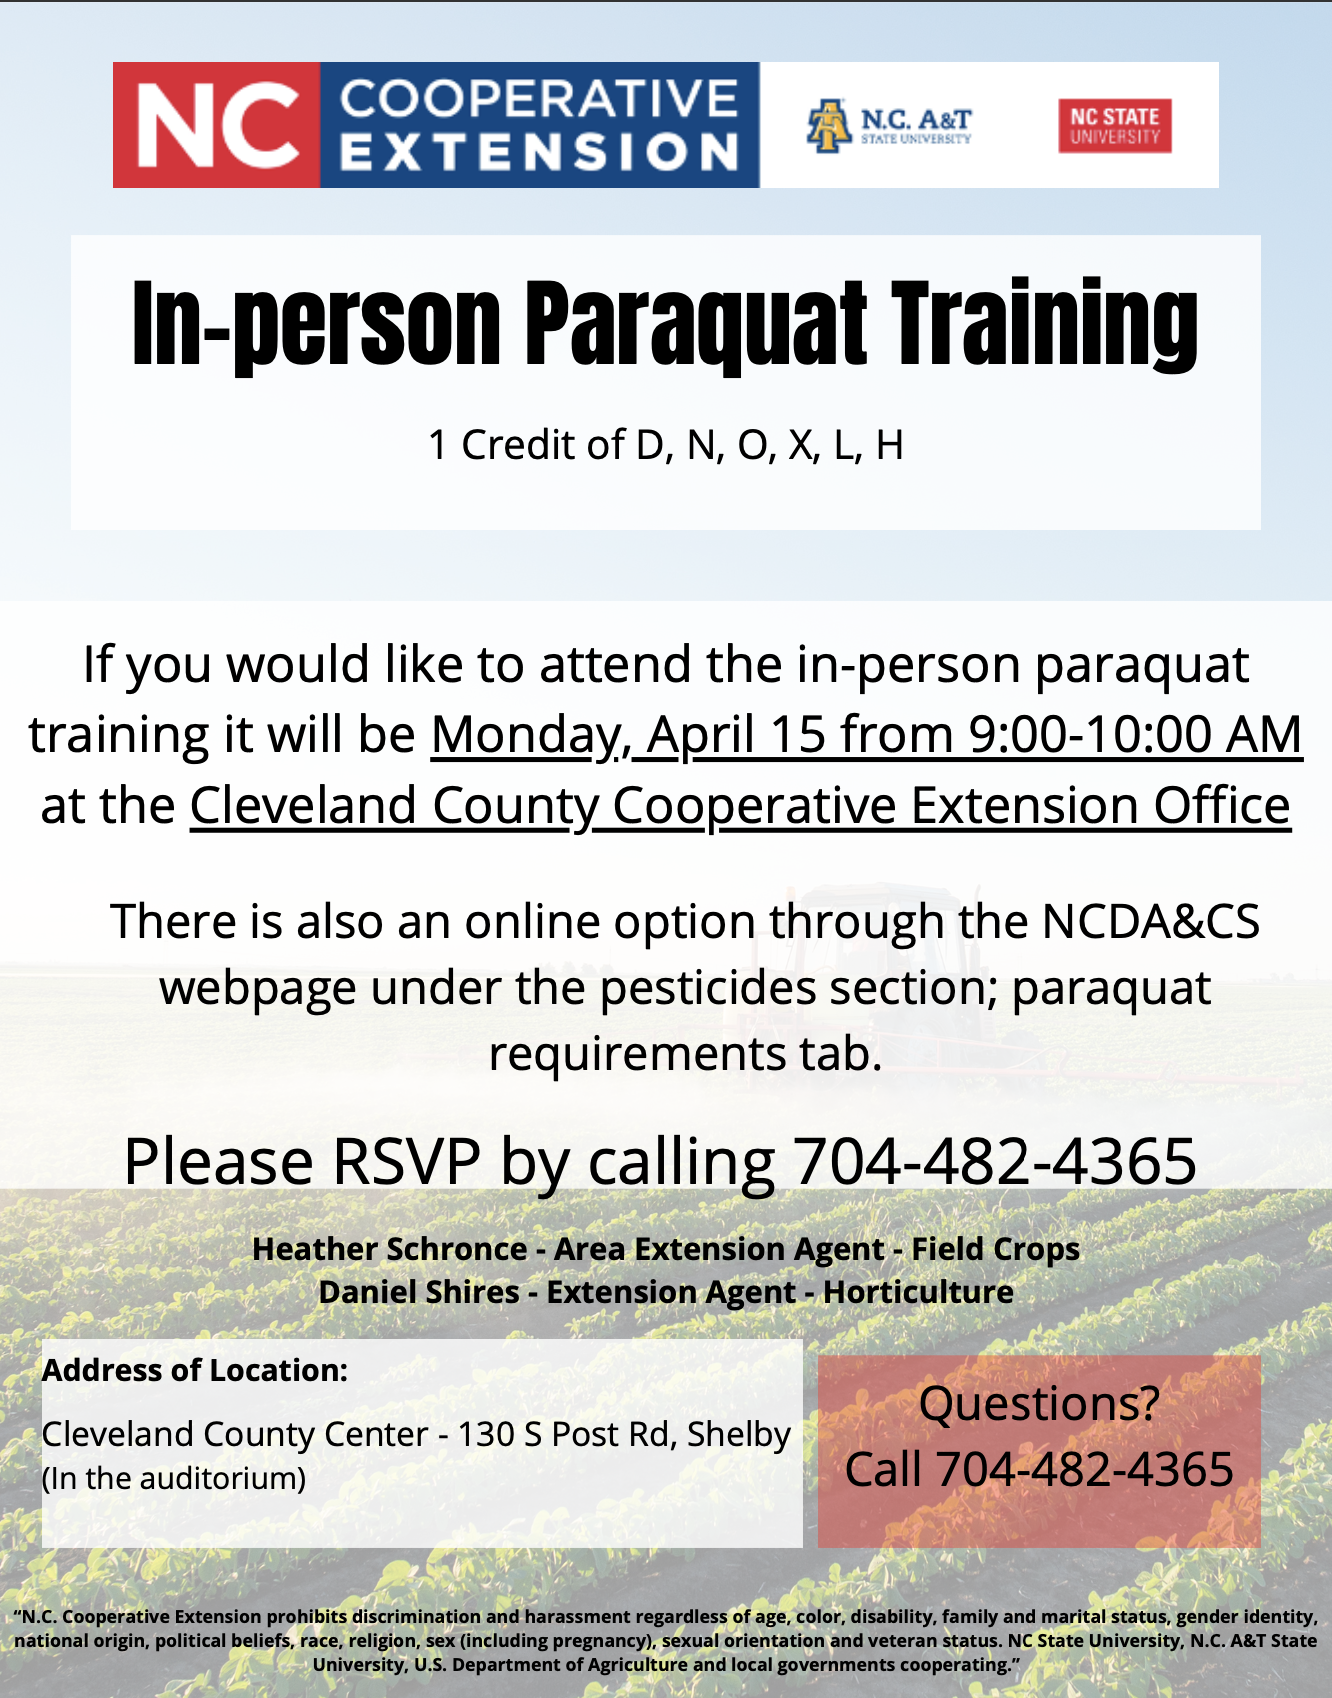 In person paraquat Training.